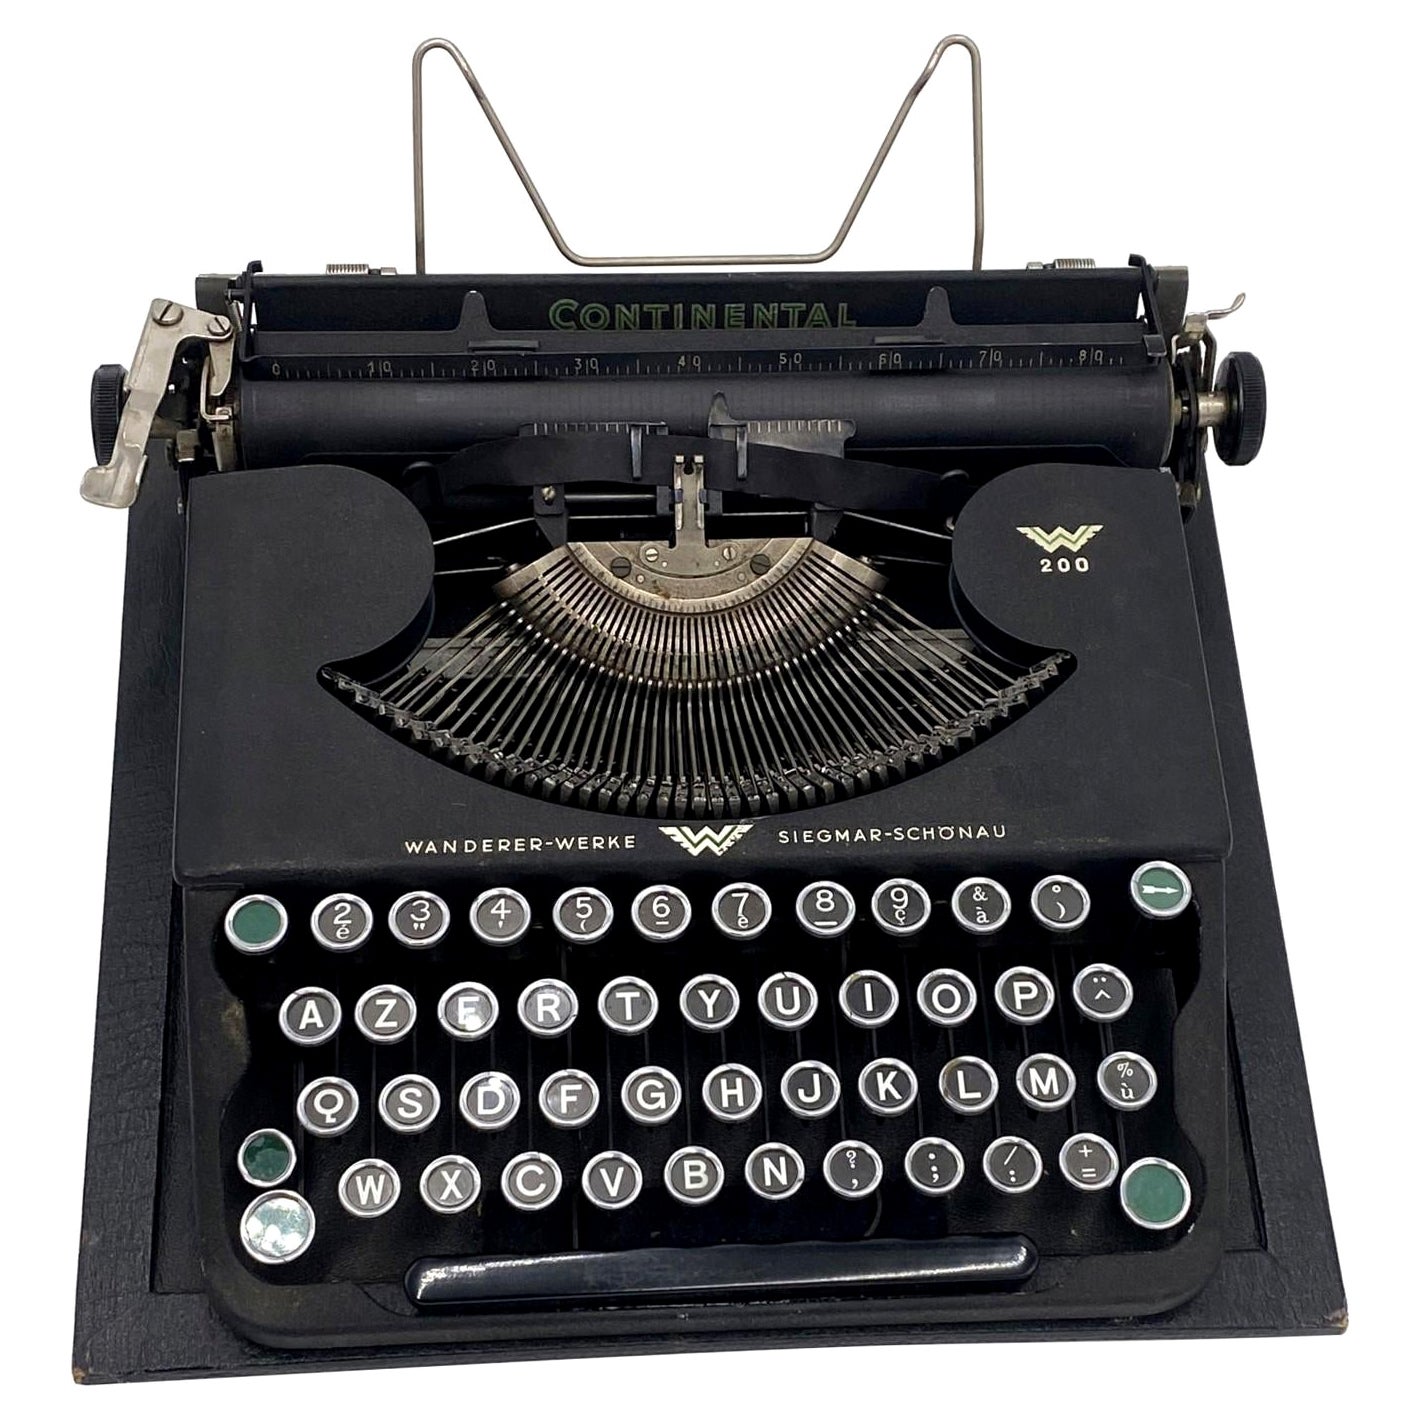 1940s Wanderer Werke French Keyboard Typewriter